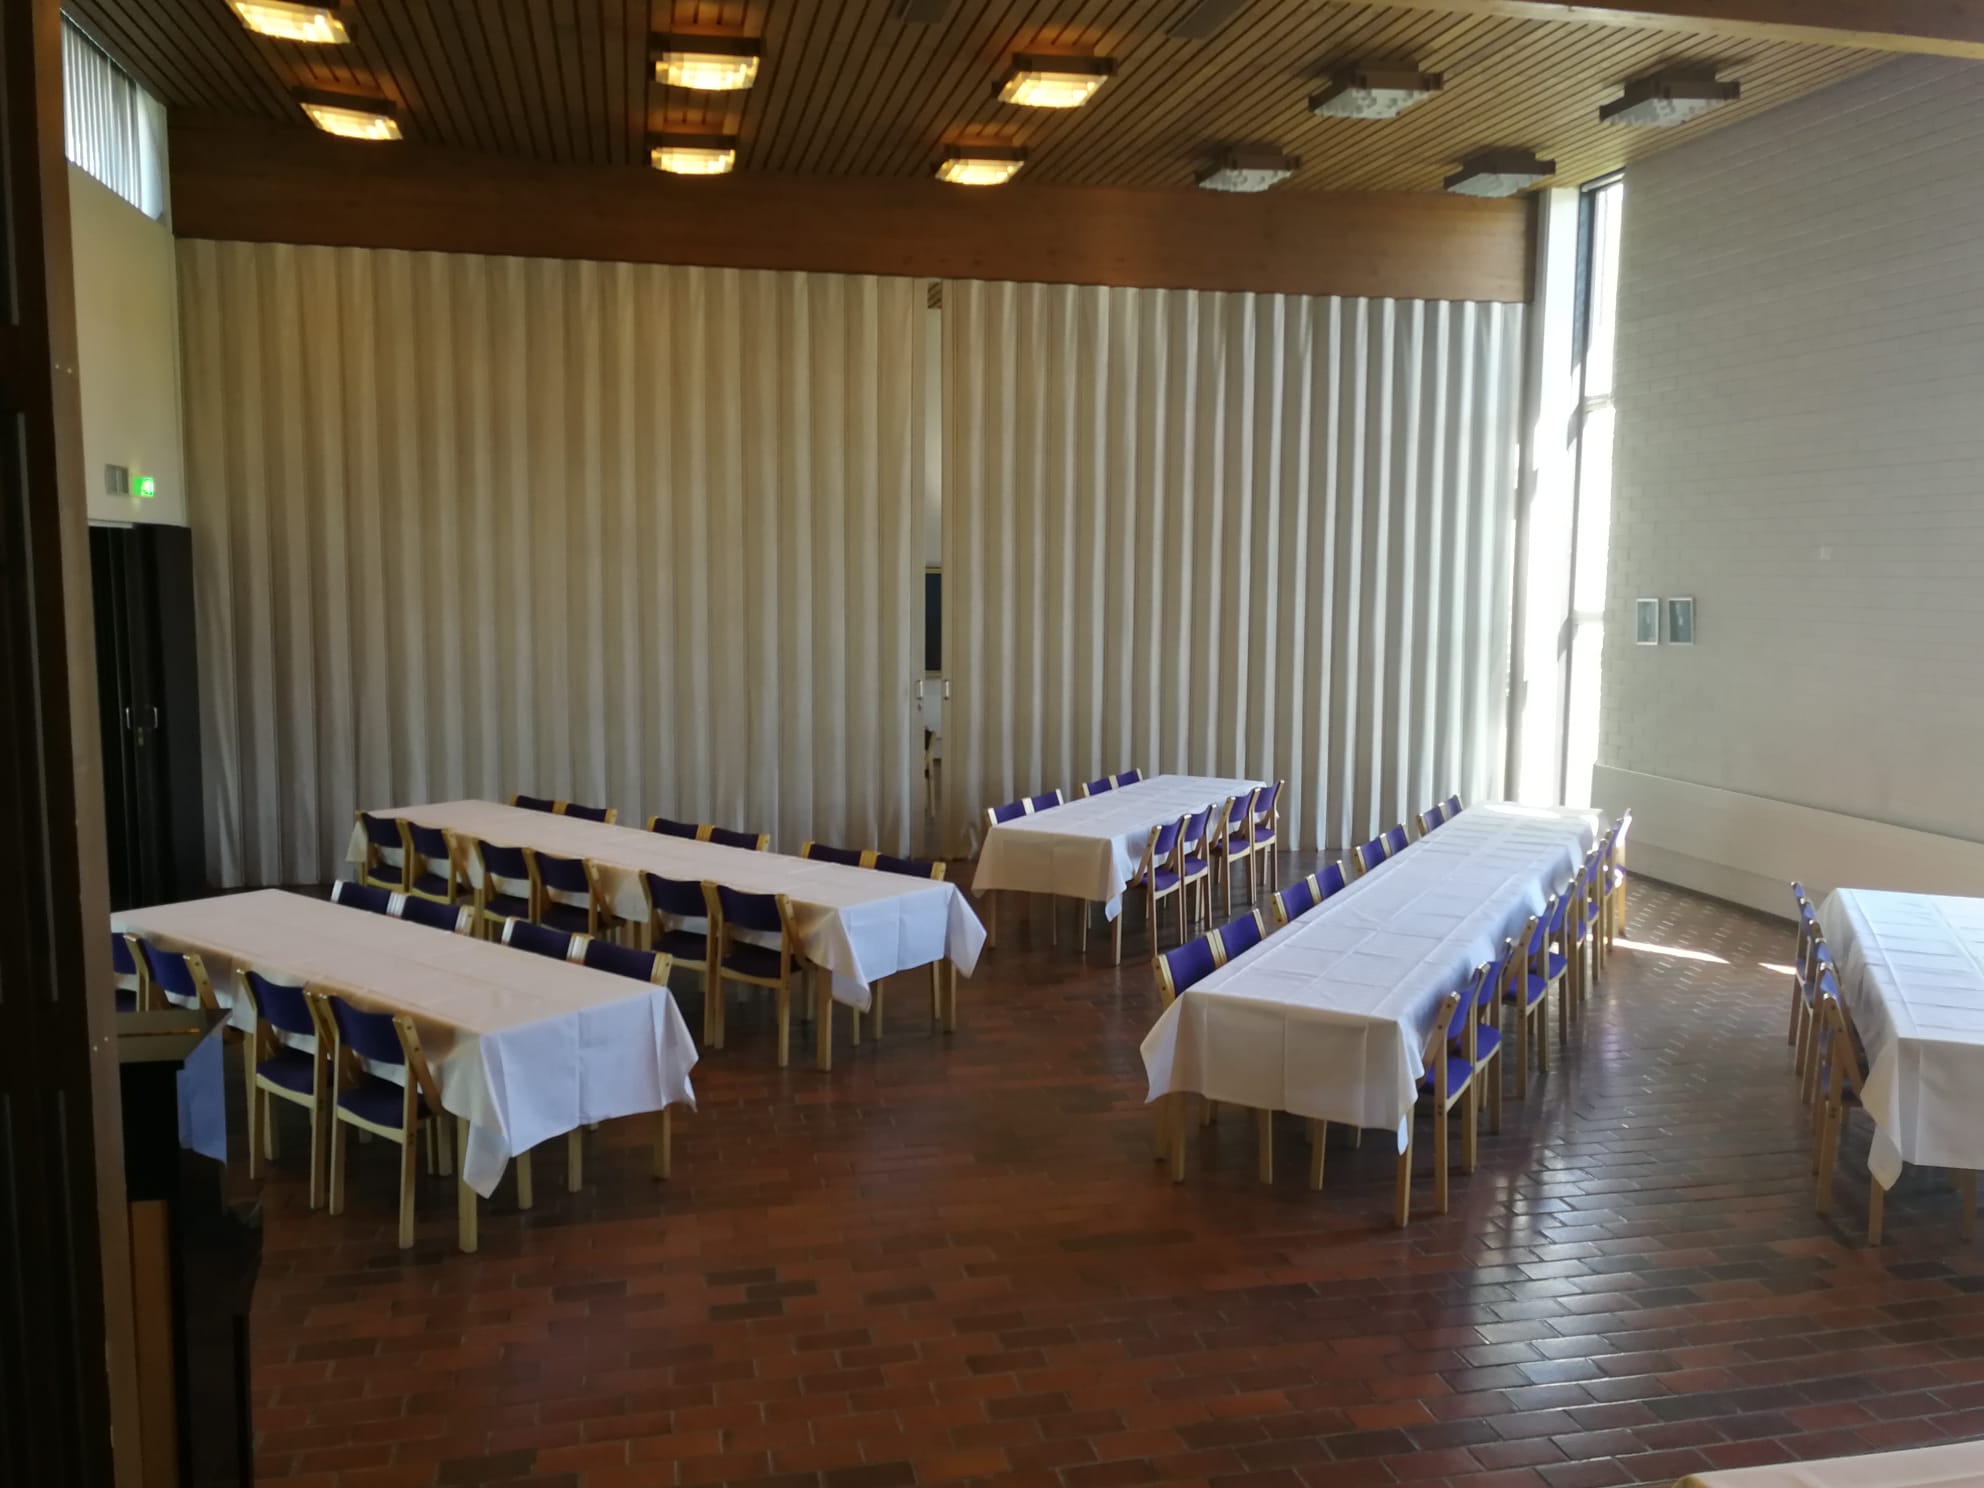 Perniön seurakuntatalon sali, pöydät liinoitettuna